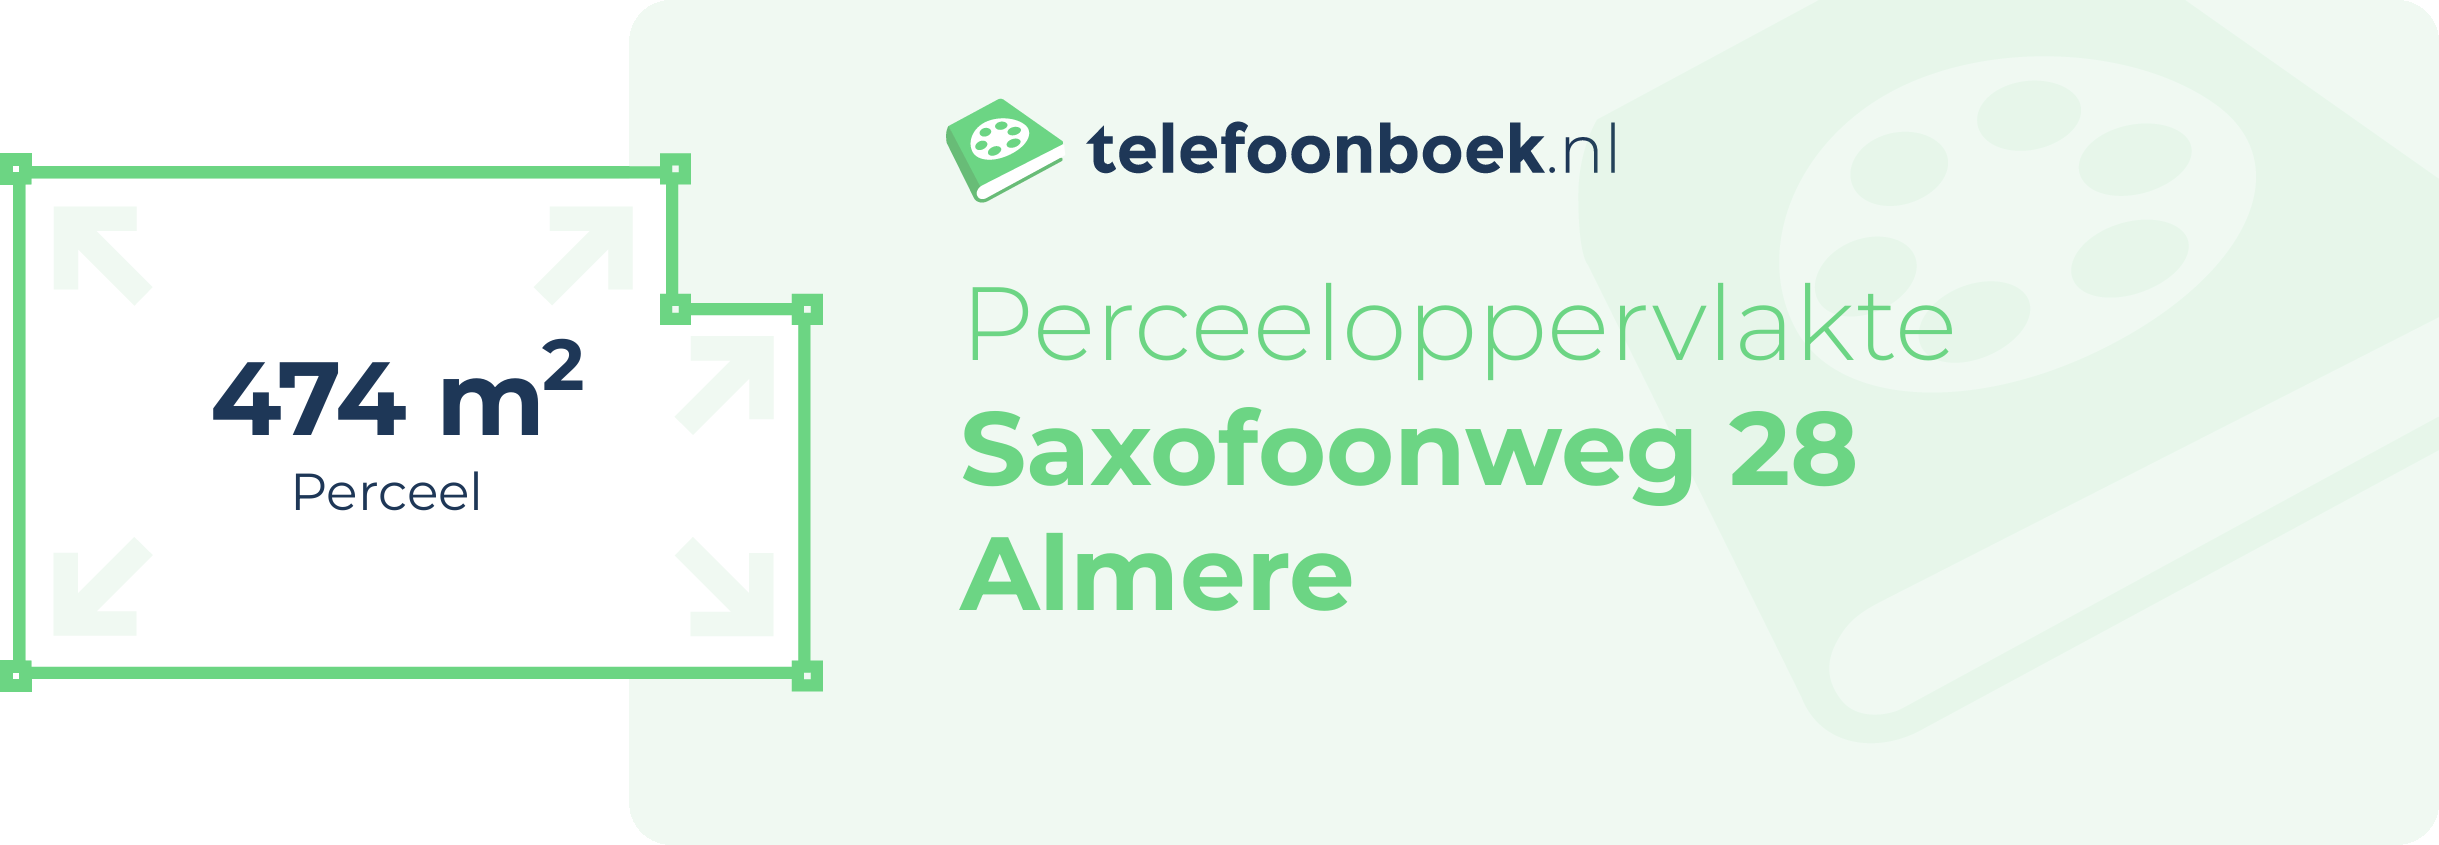 Perceeloppervlakte Saxofoonweg 28 Almere